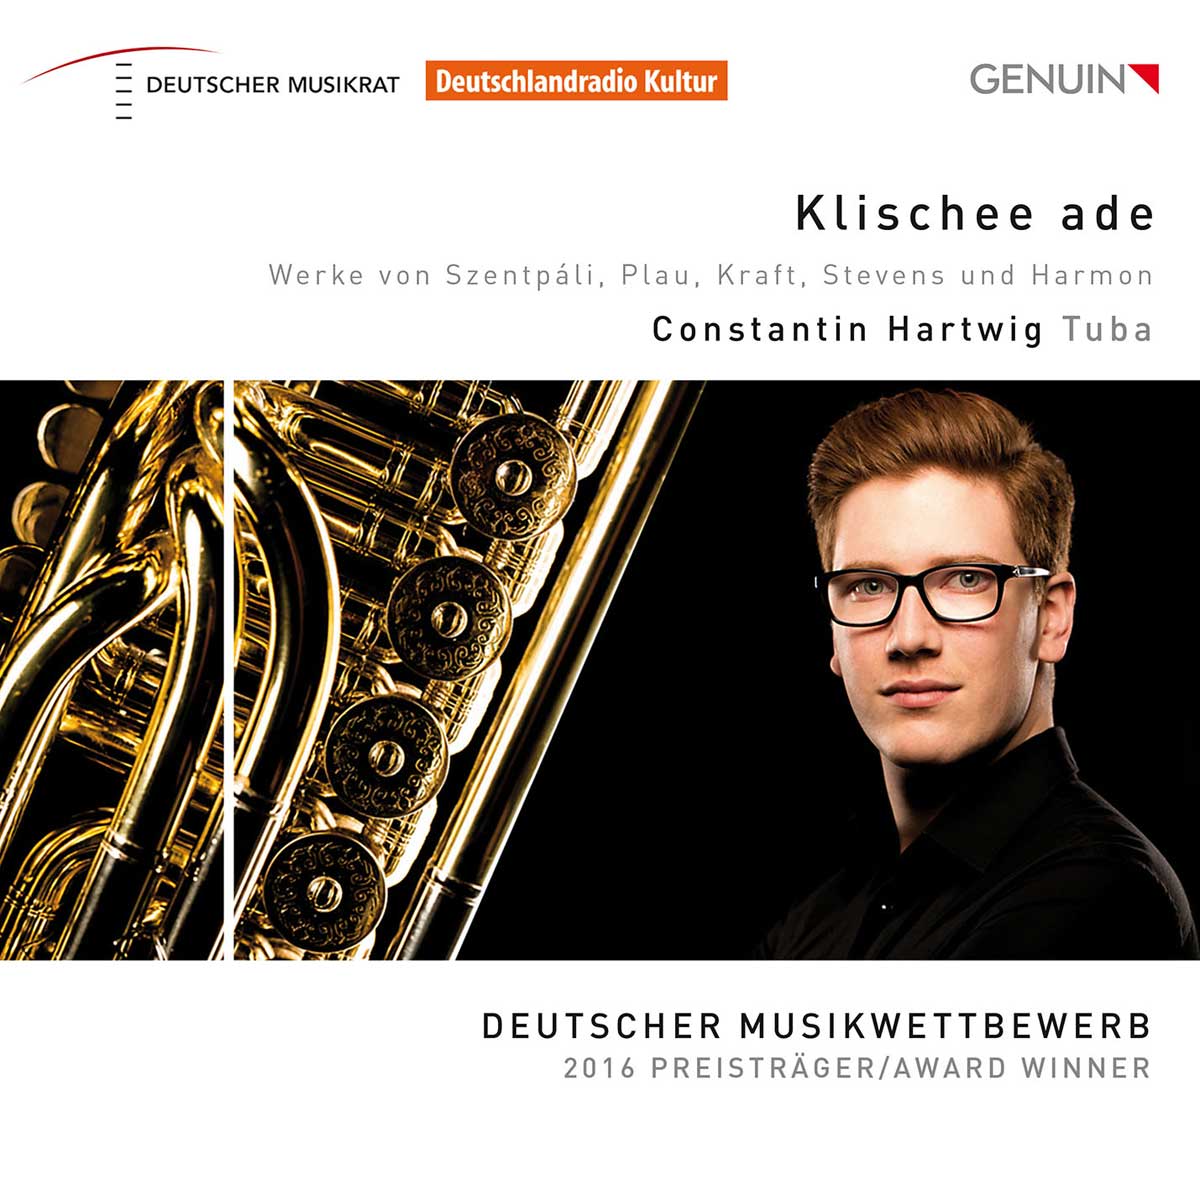 CD album cover 'Klischee ade' (GEN 17471) with Constantin Hartwig